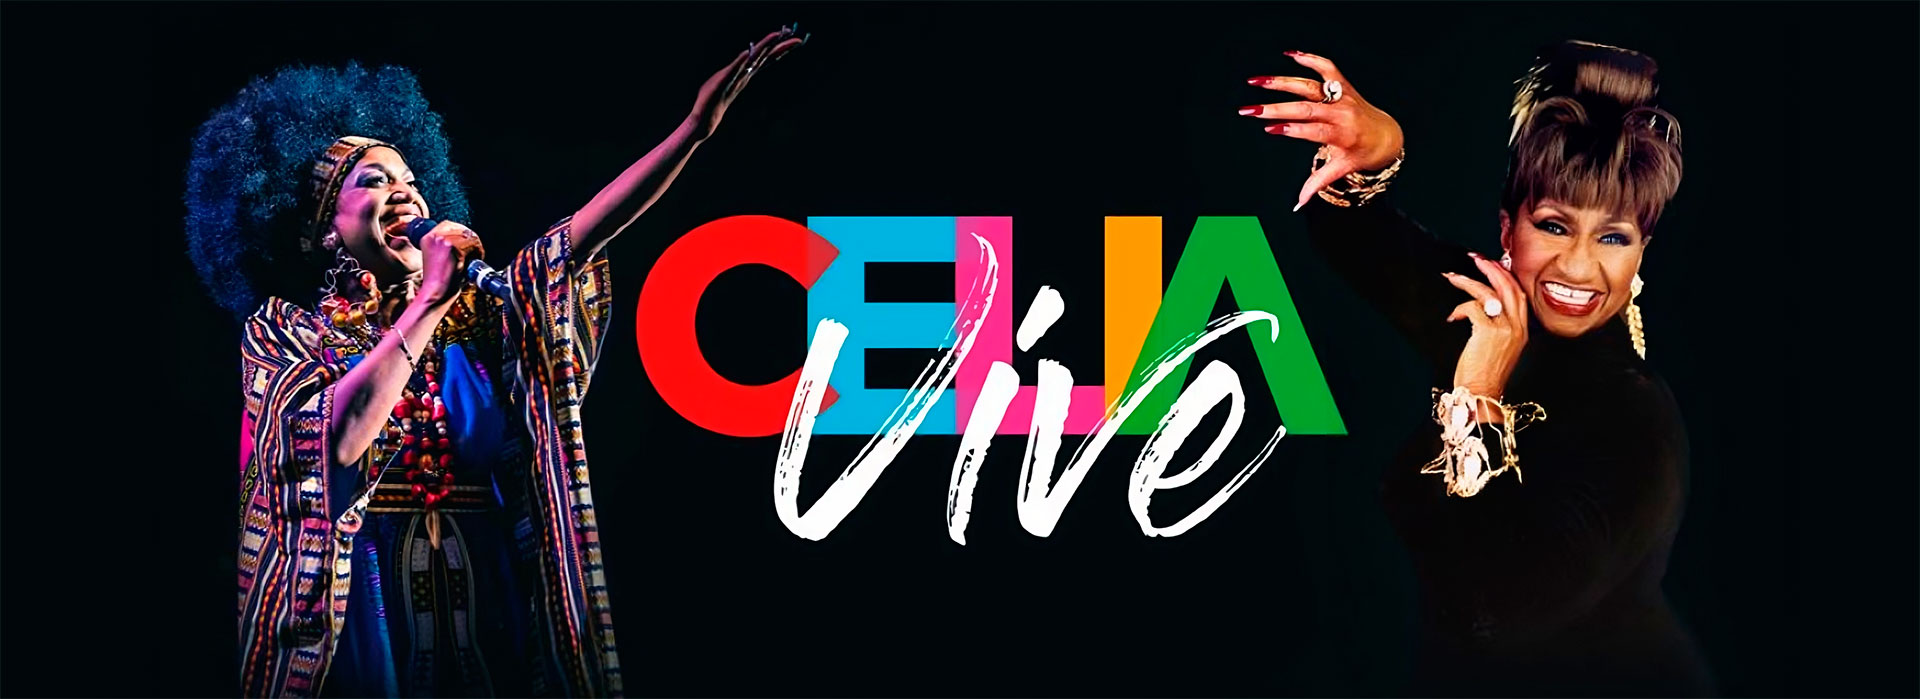 Celia-Vive-El-Centenario-CMBbooking